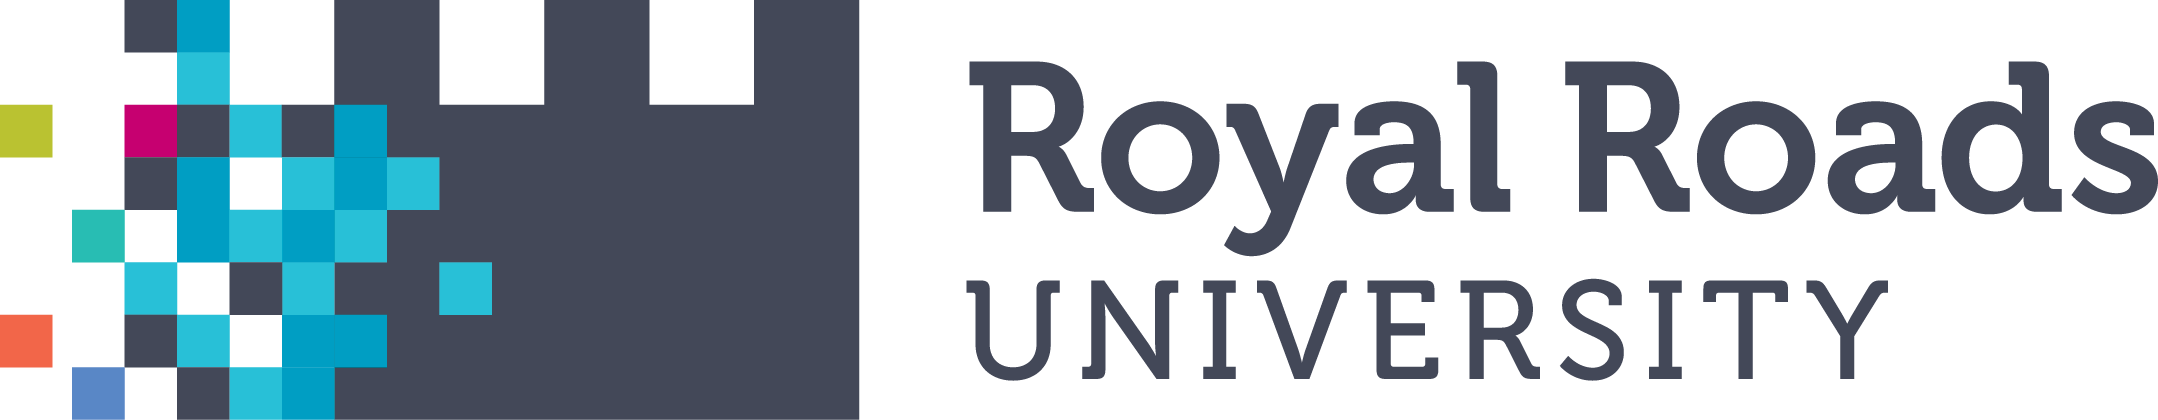 Royal Roads University (RRU)